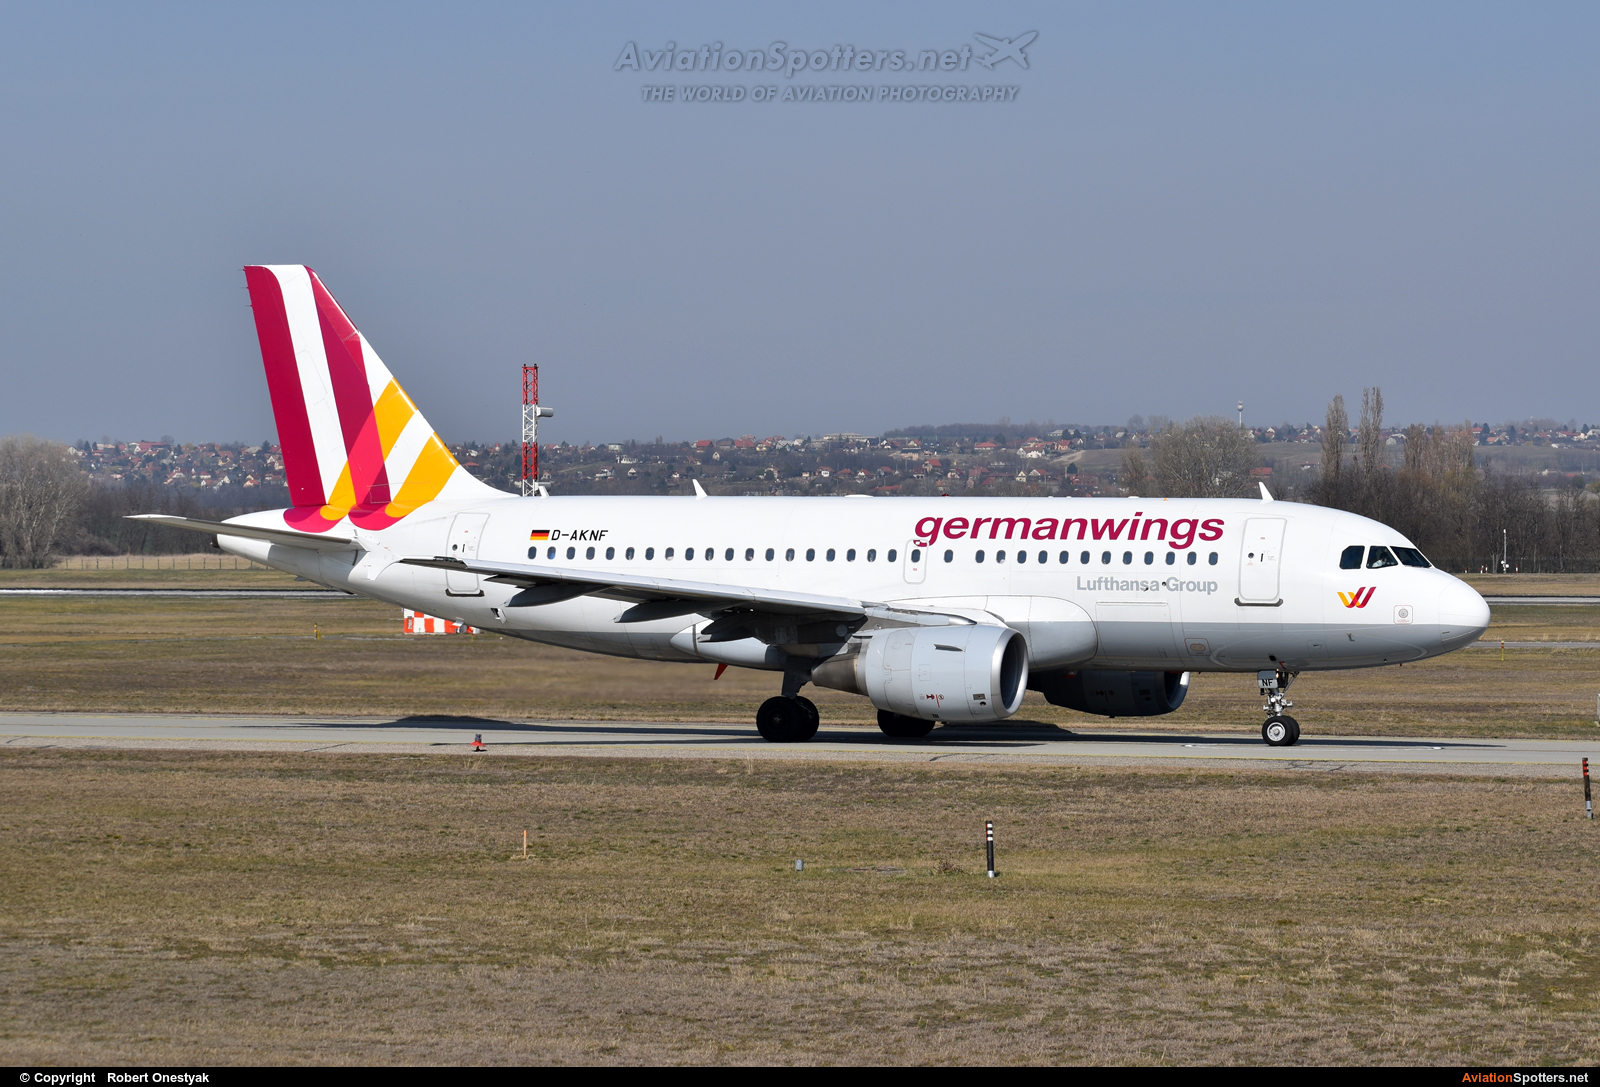 Germanwings  -  A319-112  (D-AKNF) By Robert Onestyak (Robert.814)